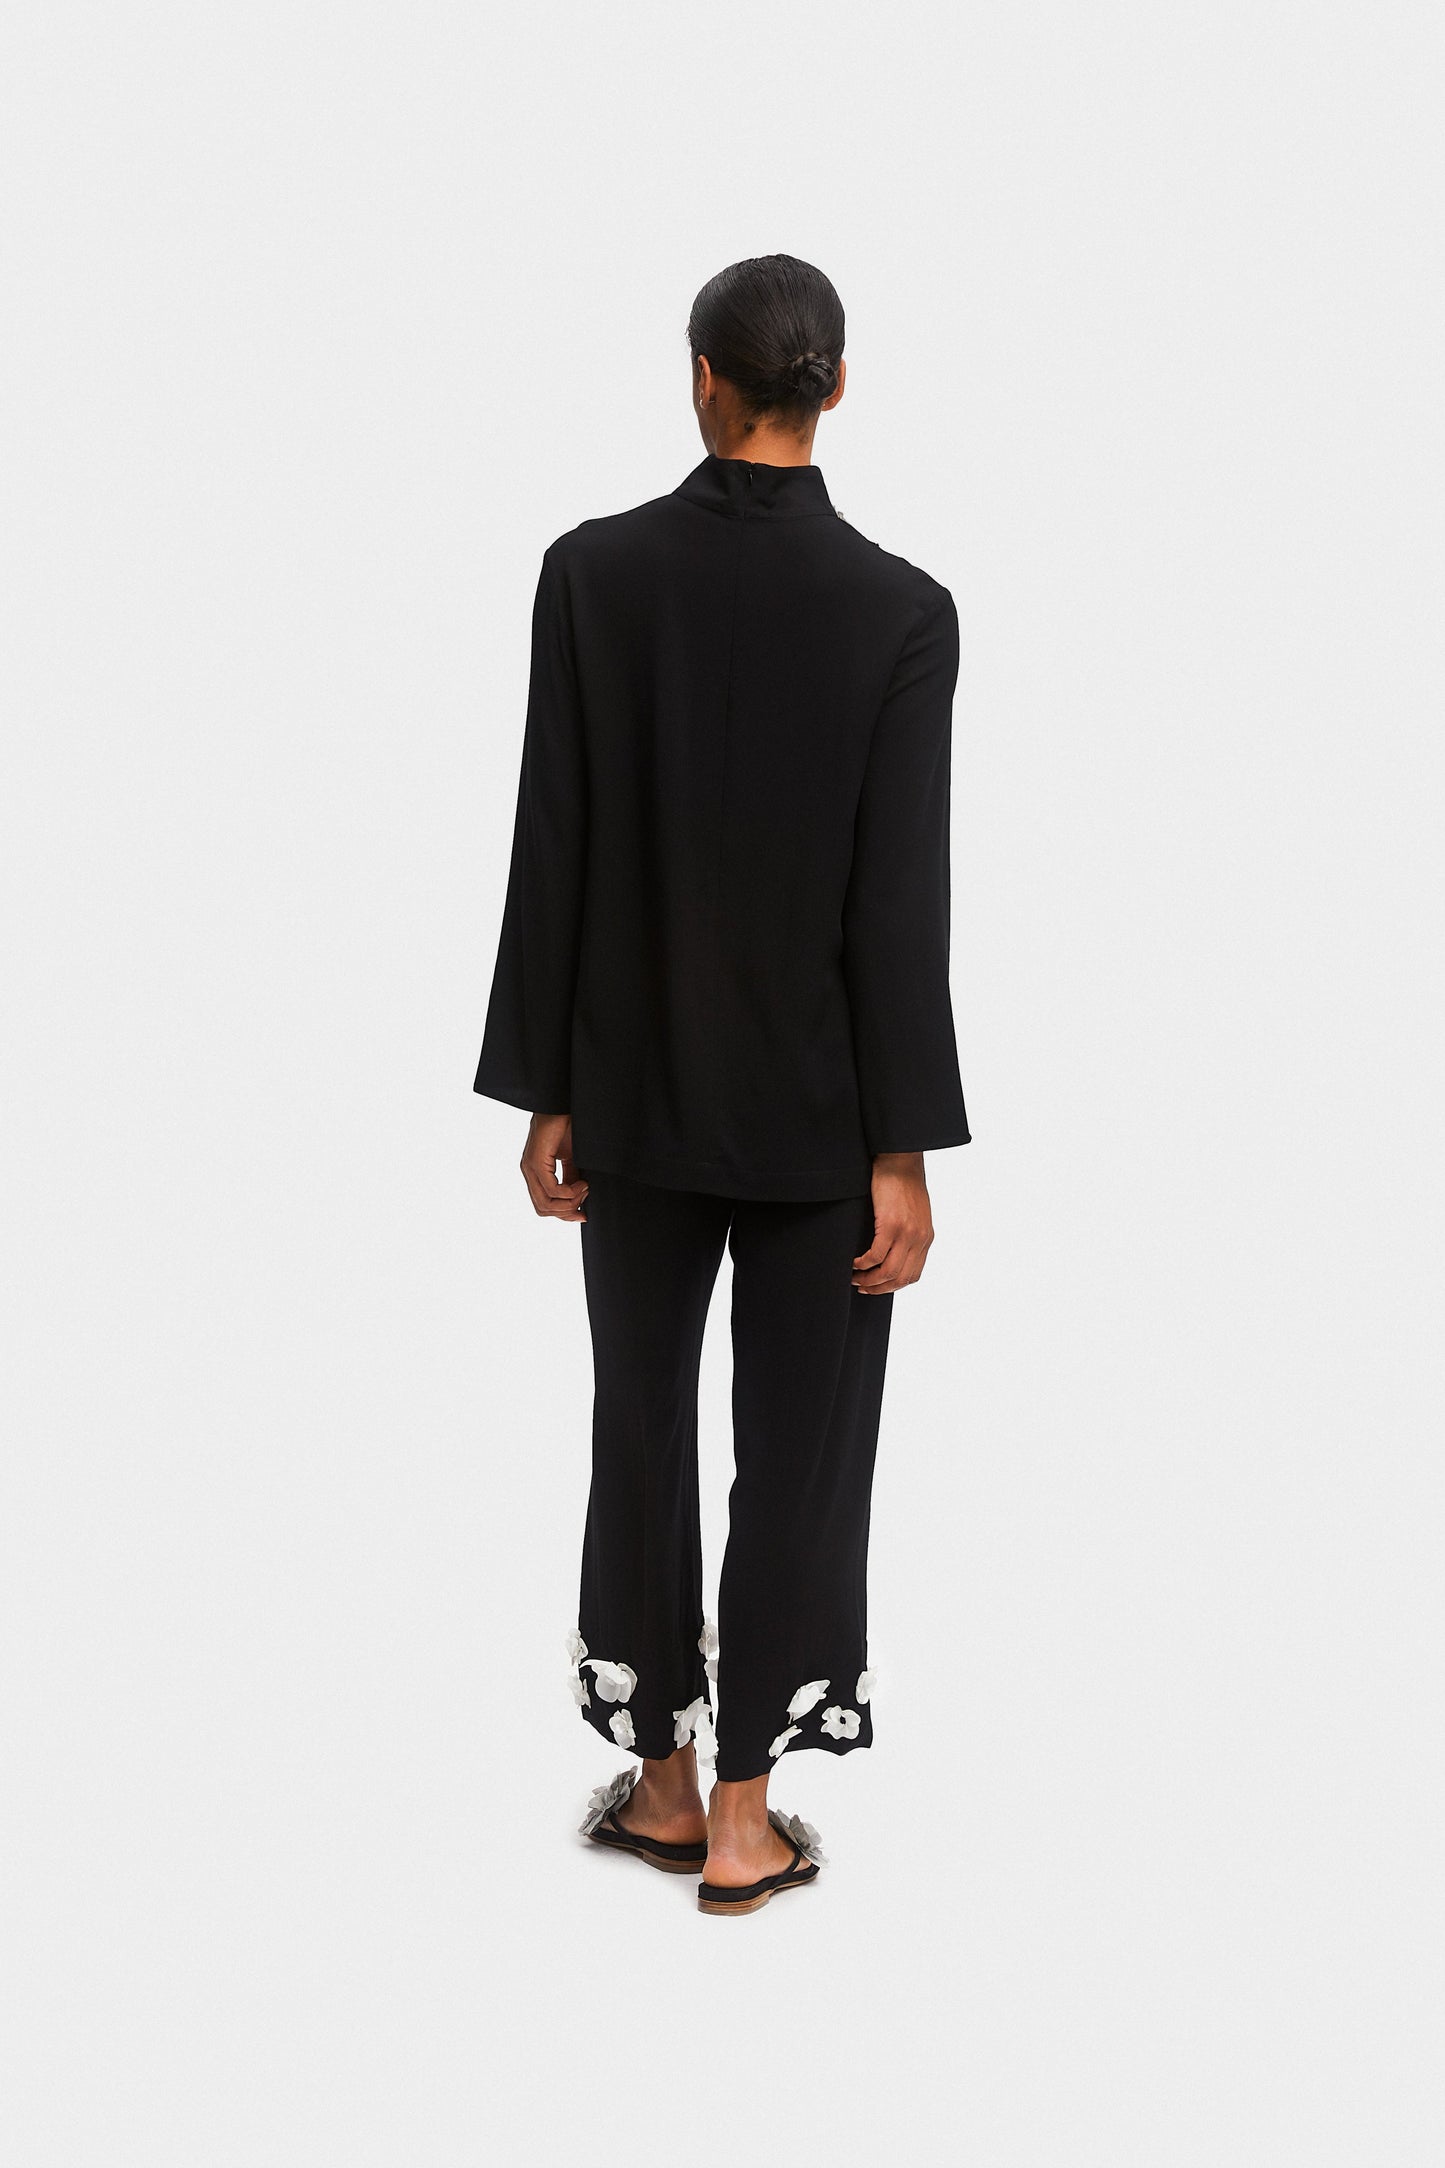 The Bloom Black Tie Pajama Set with Pants in Black